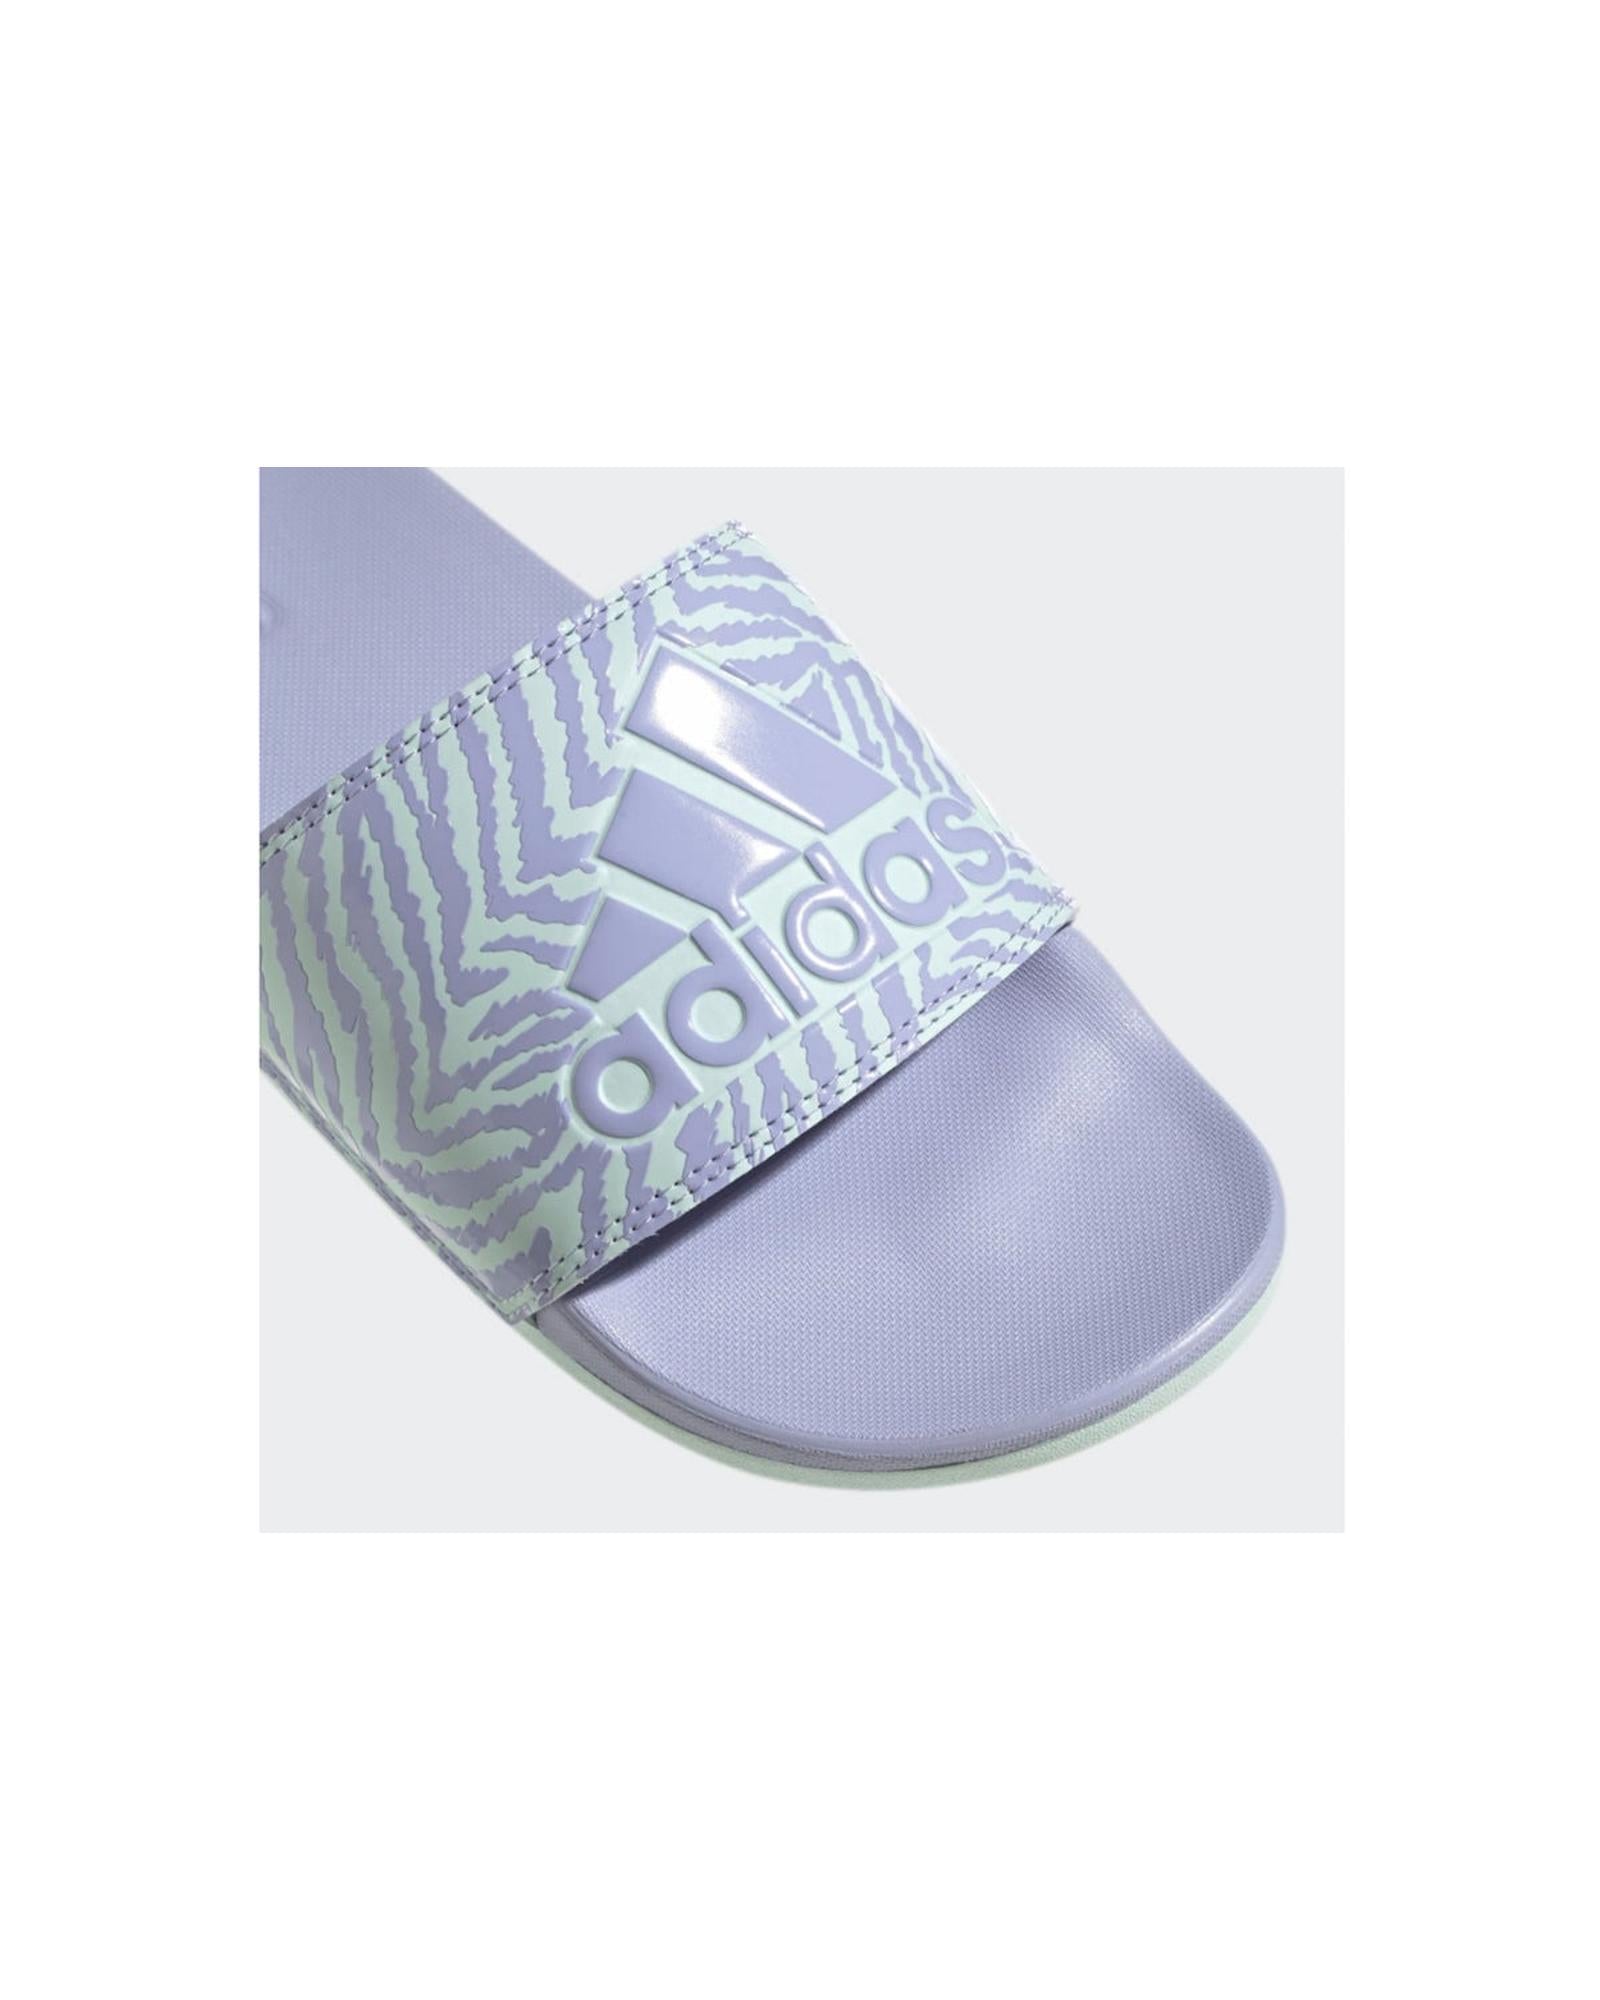 Floral Print Slip-On Comfort Slides - 9 US